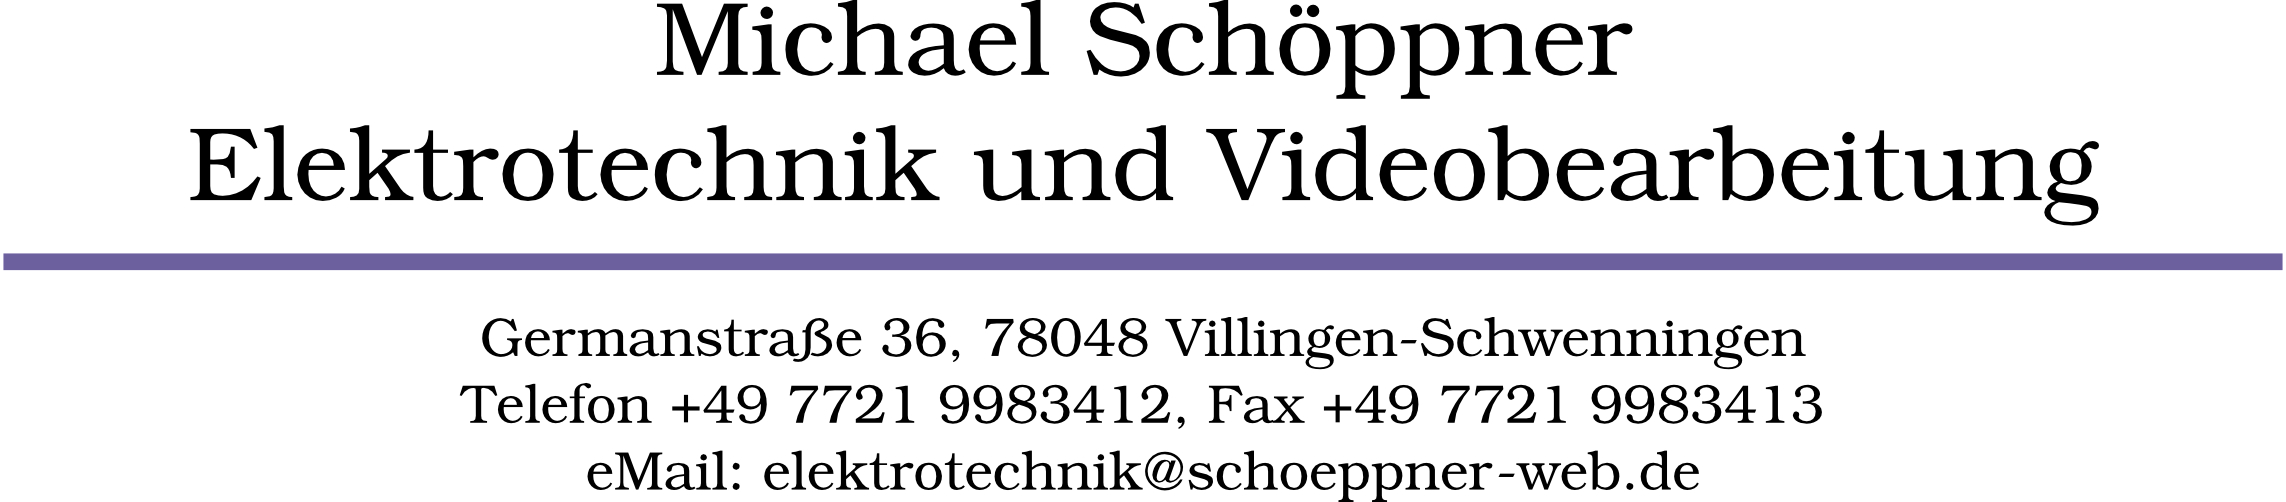 Michael Schppner - Elektrotechnik